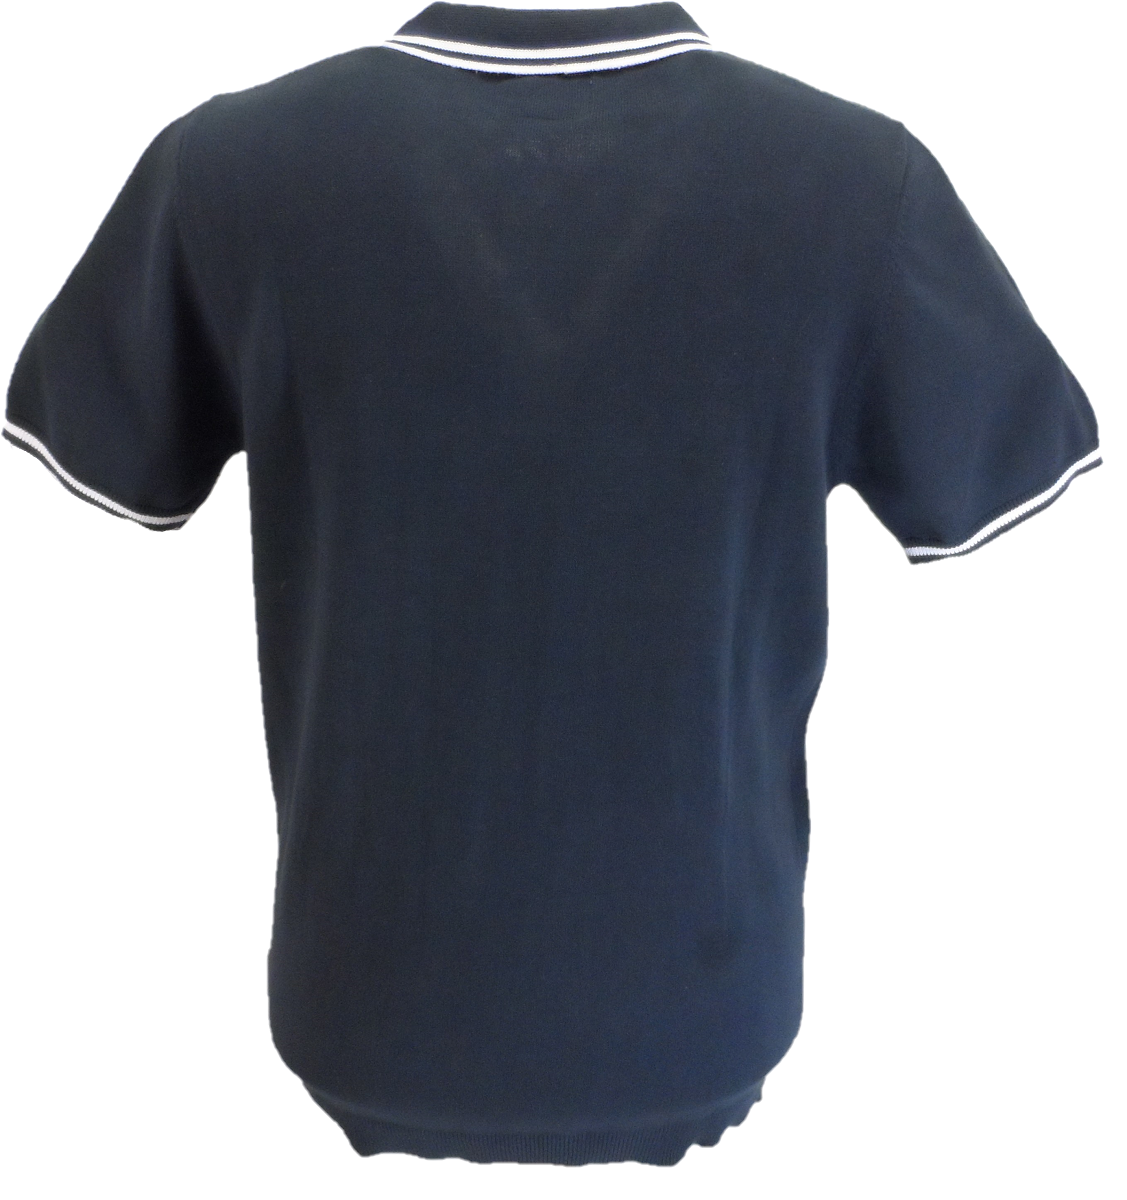 Lambrettaメンズ ネイビー ブルー チップカラー ニット ポロシャツ